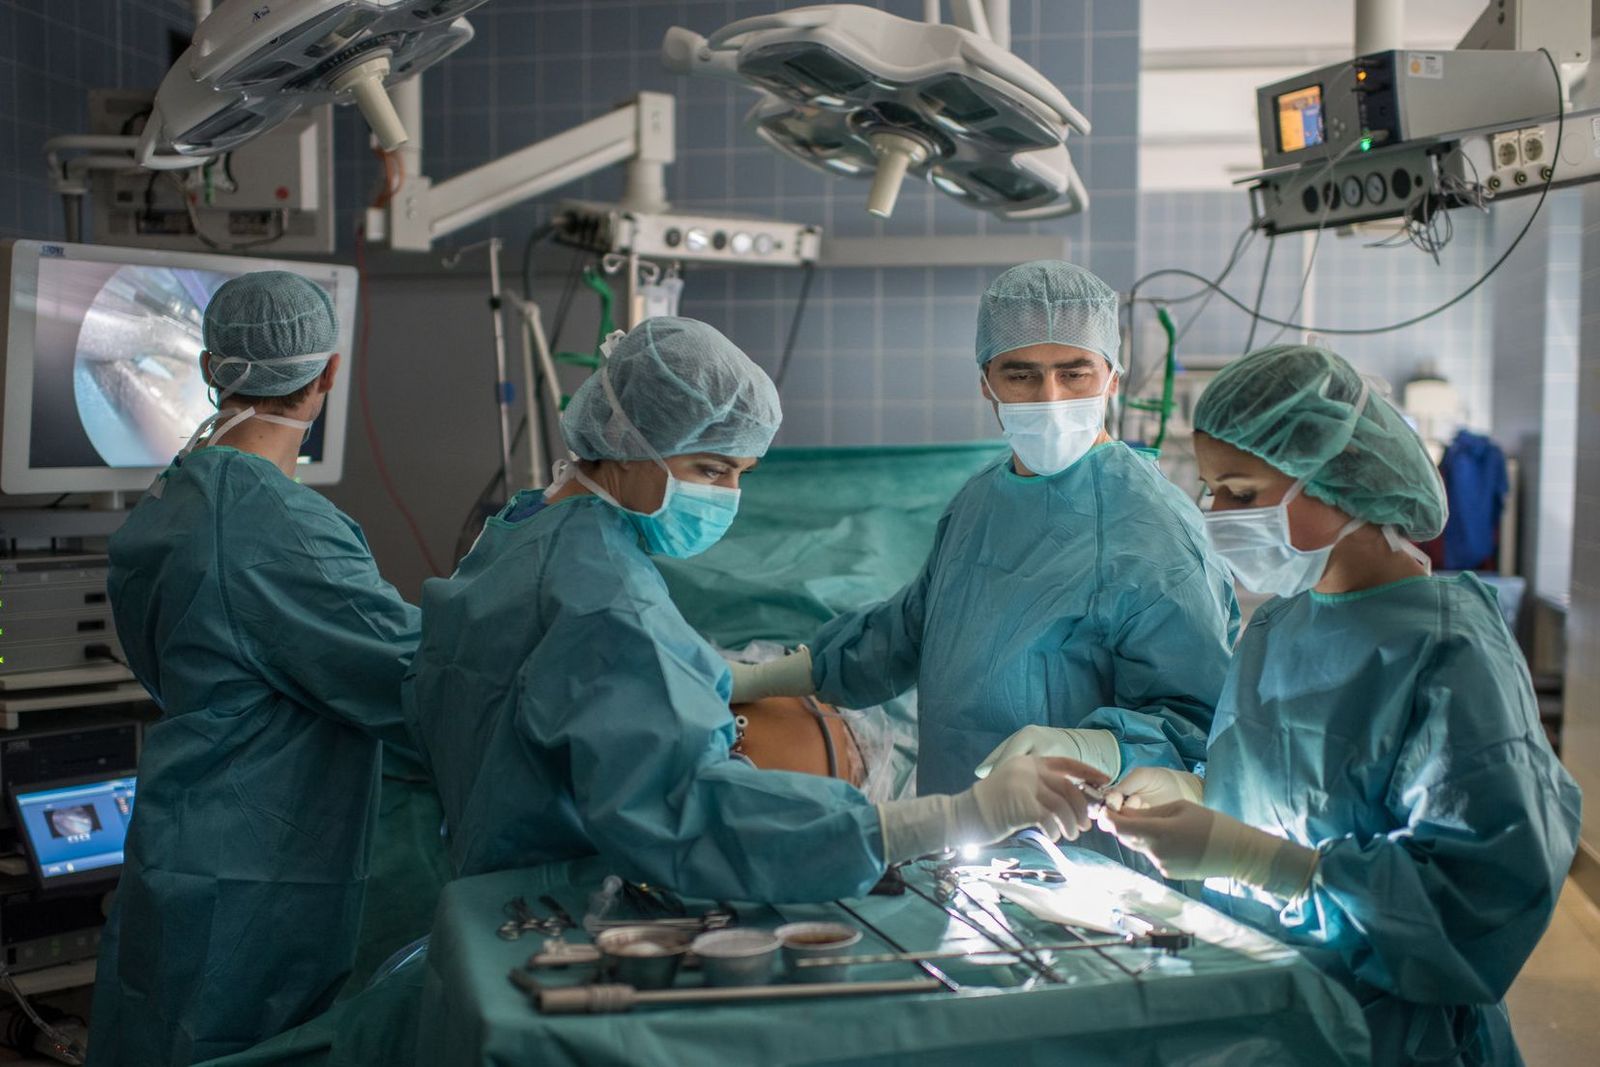 Ärztin und Ärzte im Operationssaal bei Gallenoperation mit miminal-invasiver Operationstechnik, das bedeutet operieren über kleinste Hautschnitte in den Körper